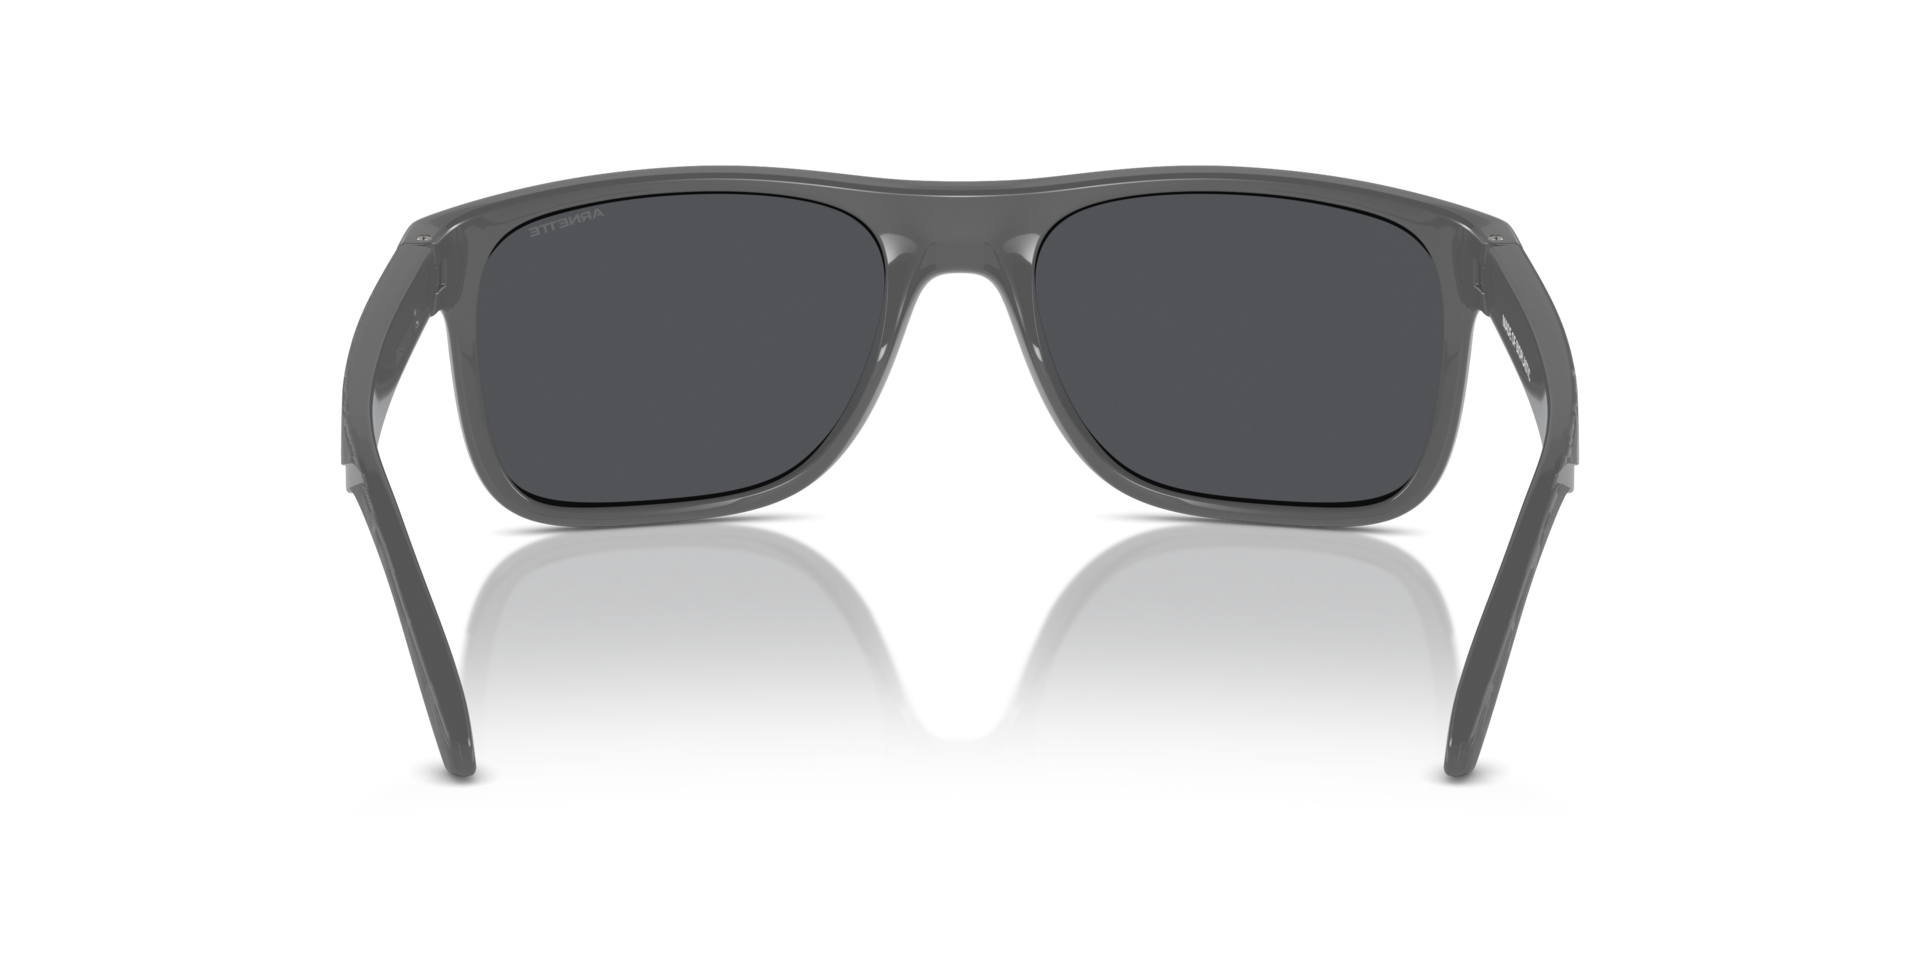 Das Bild zeigt die Sonnenbrille AN4341 287087 von der Marke Arnette in schwarz/grau.